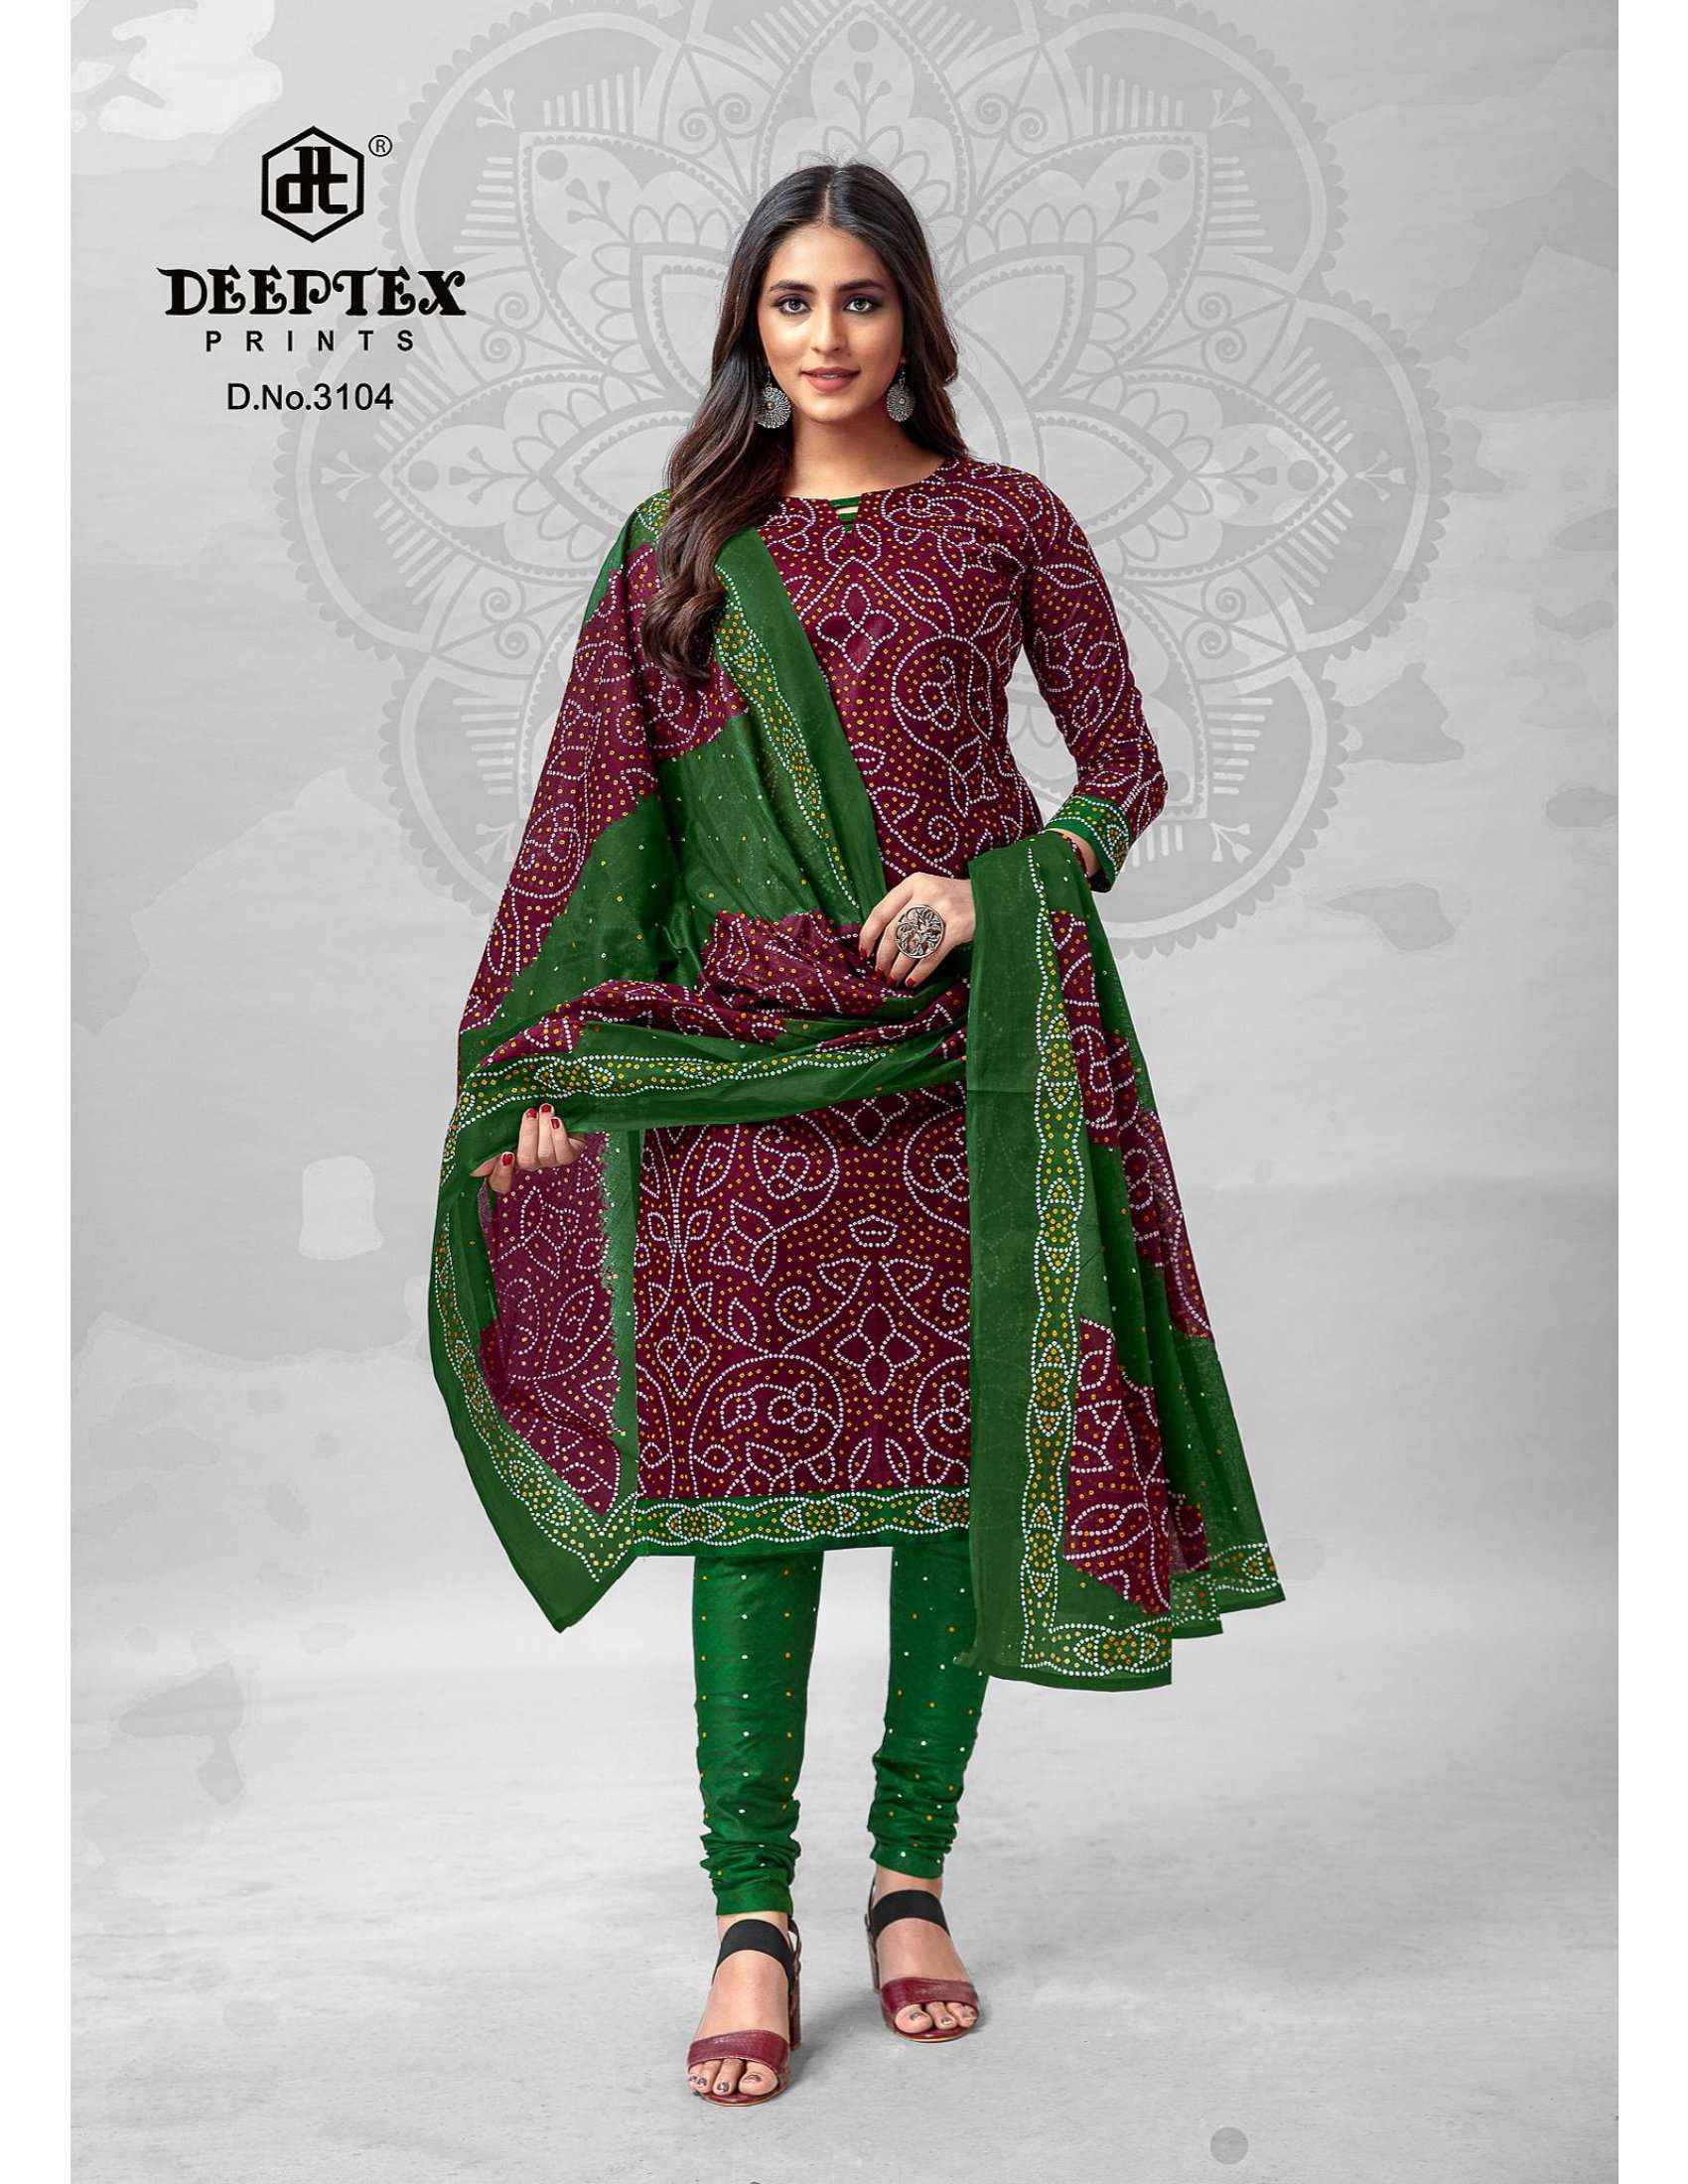 Deeptex Classic Chunari Vol 31 Bandhni Cotton Dress Material 16 pcs Catalogue